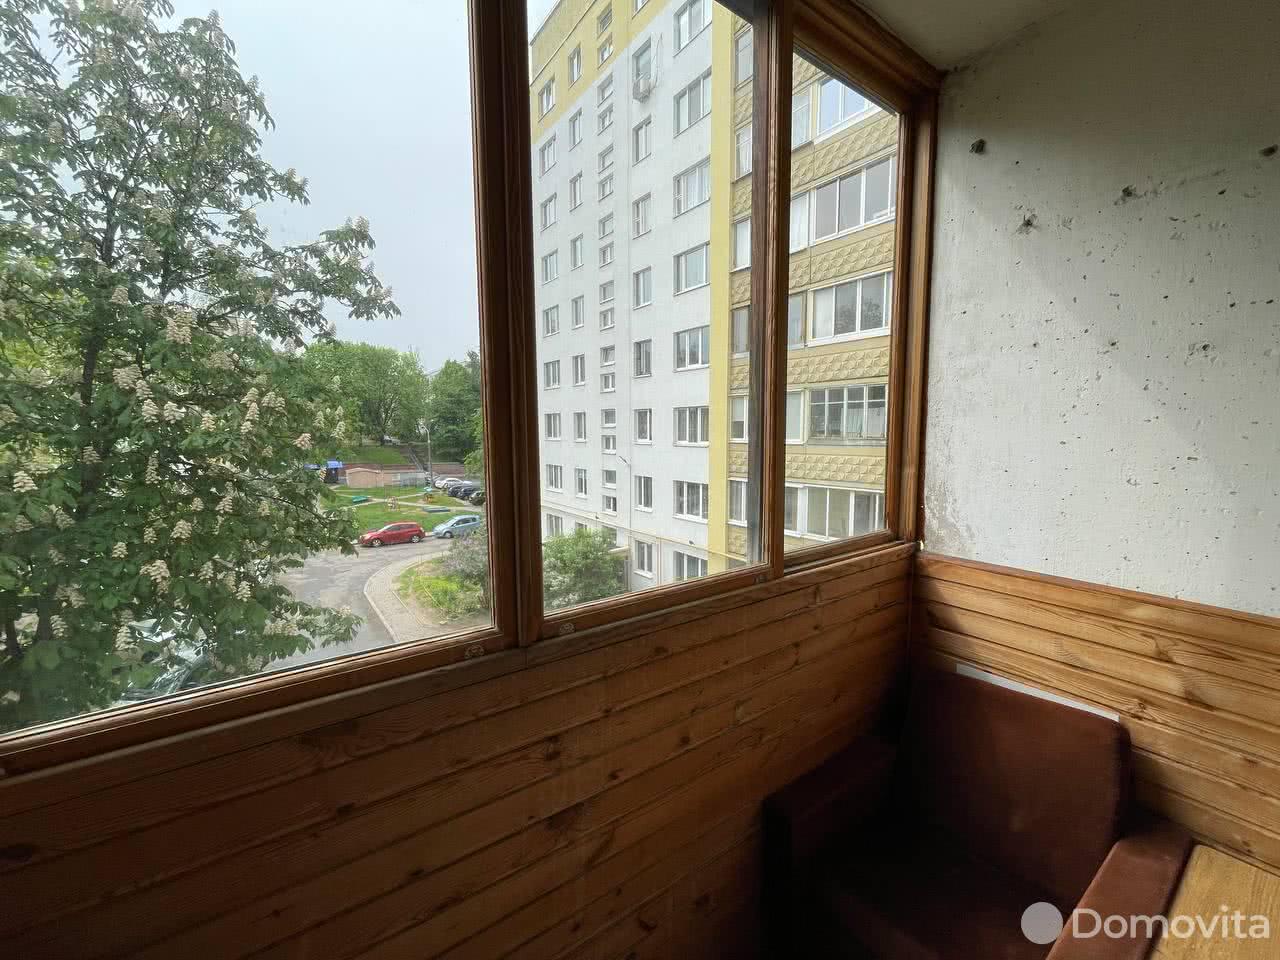 Стоимость продажи квартиры, Минск, ул. Матусевича, д. 27